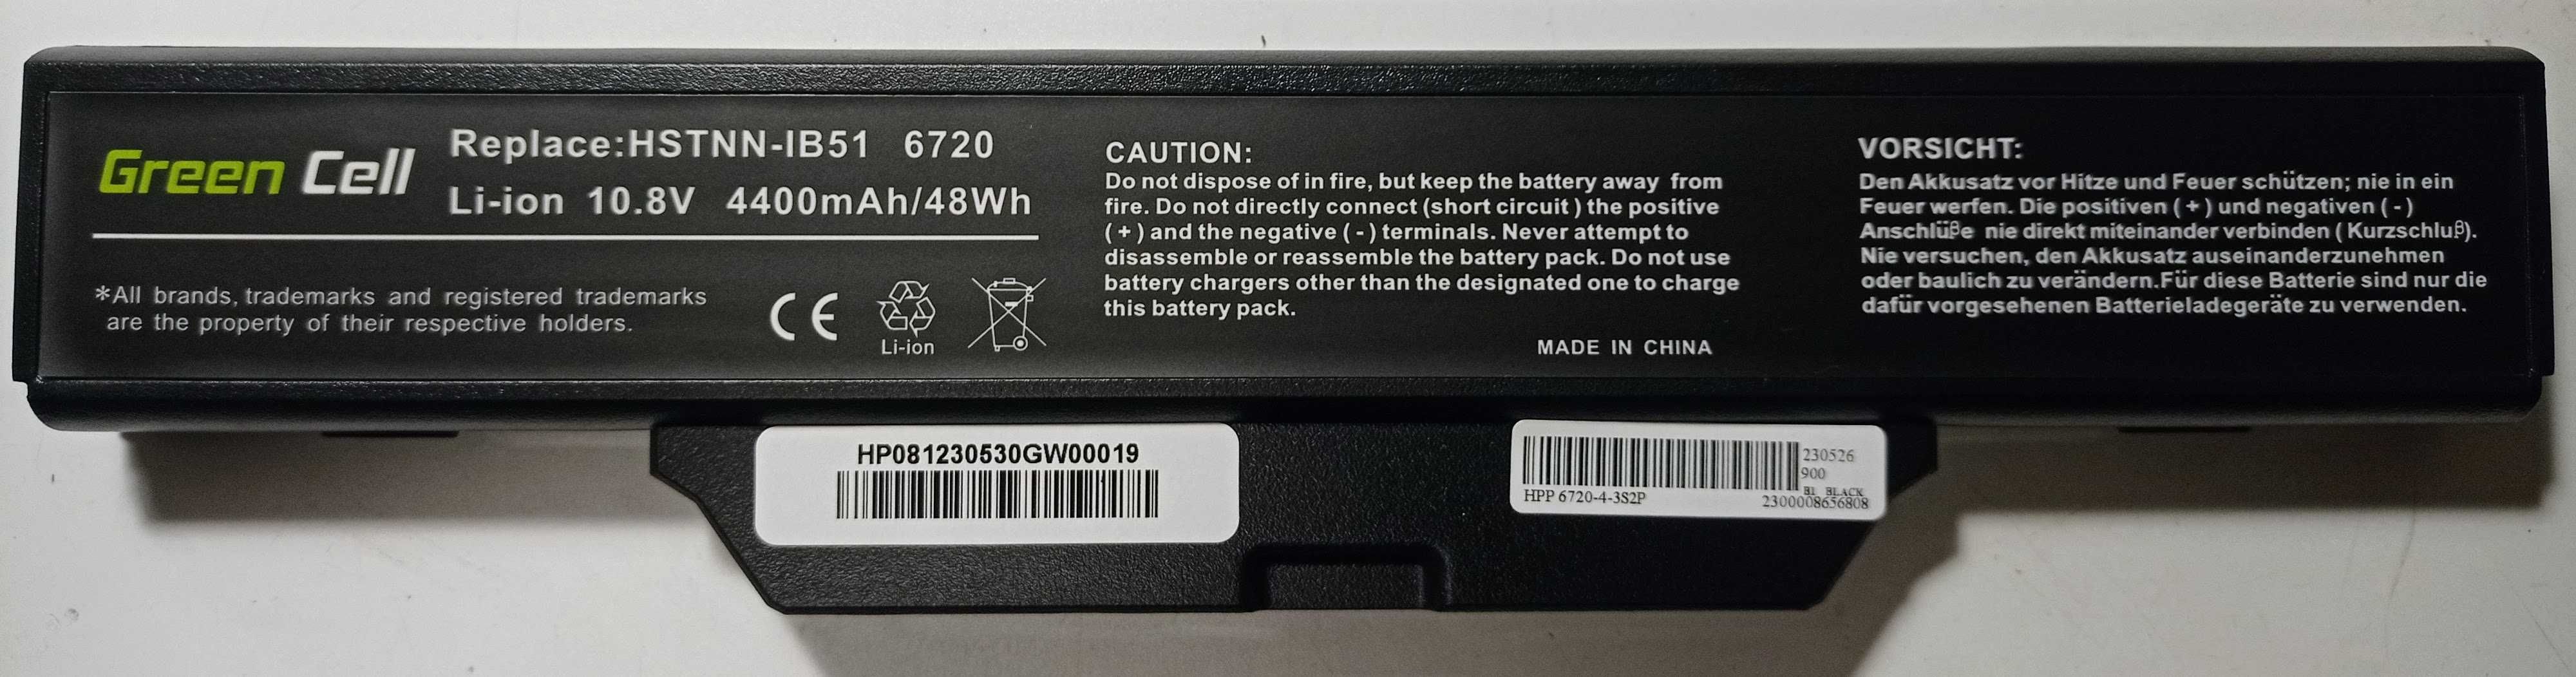 Bateria NOVA p/ PC Portátil HP 550, 610, 615 e Compaq